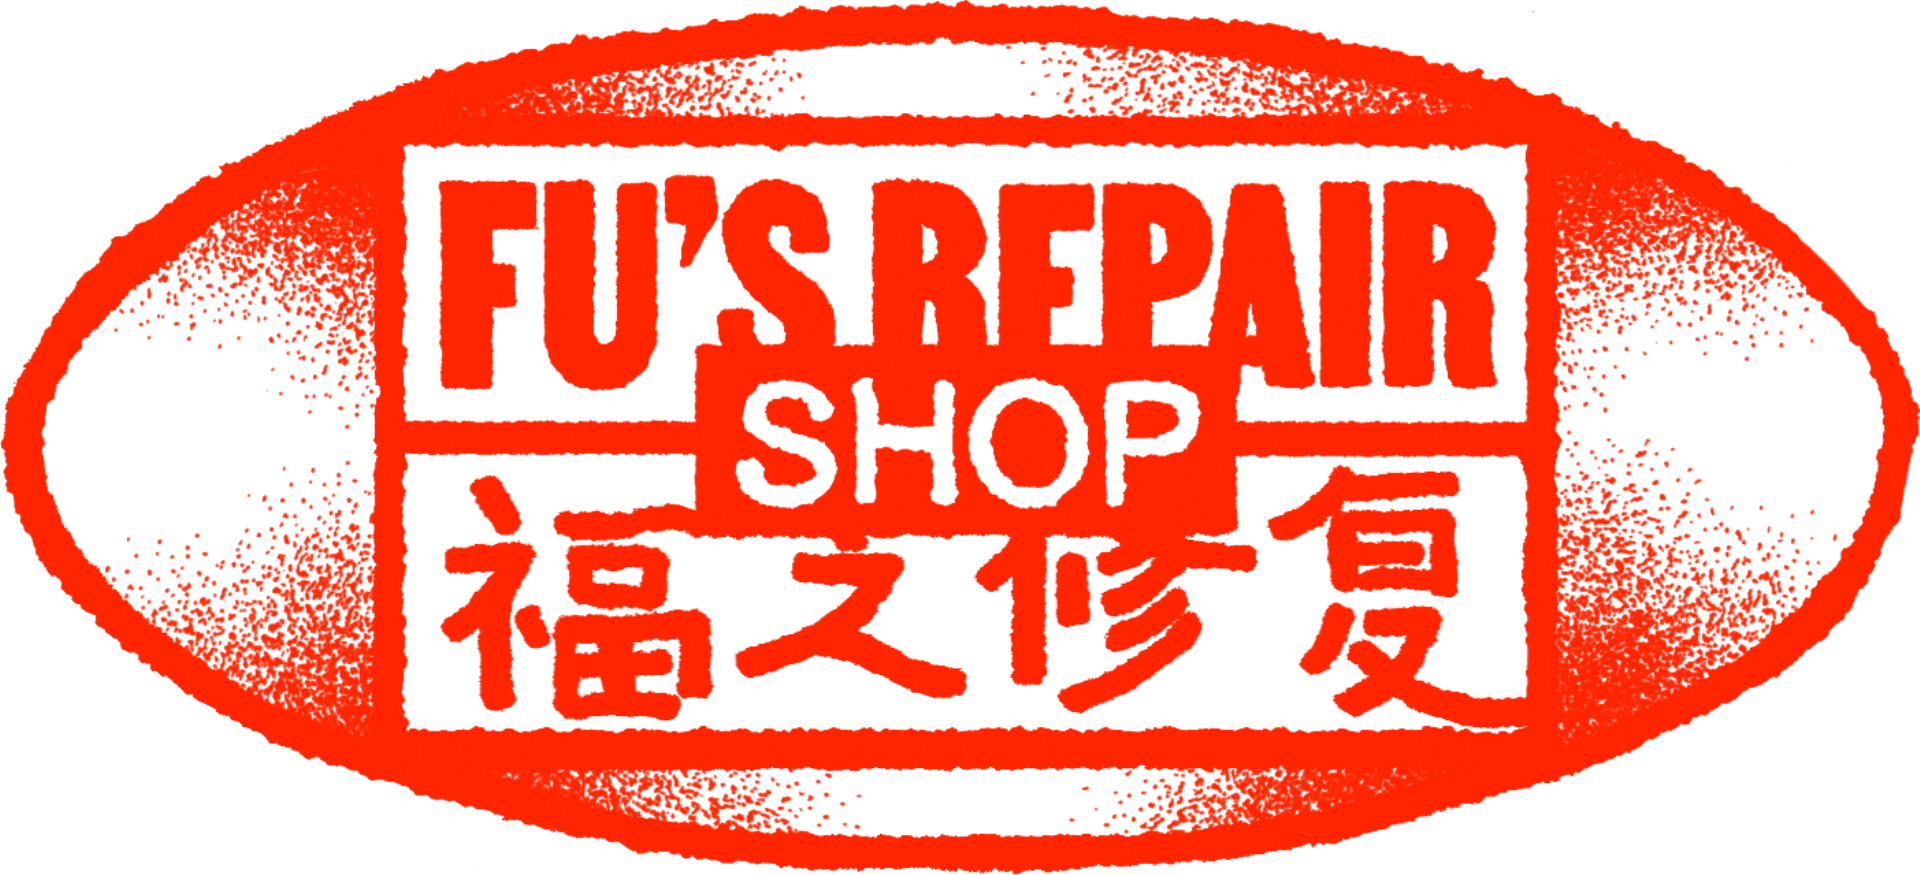 FU’s Repair Shop Restaurant - Picture